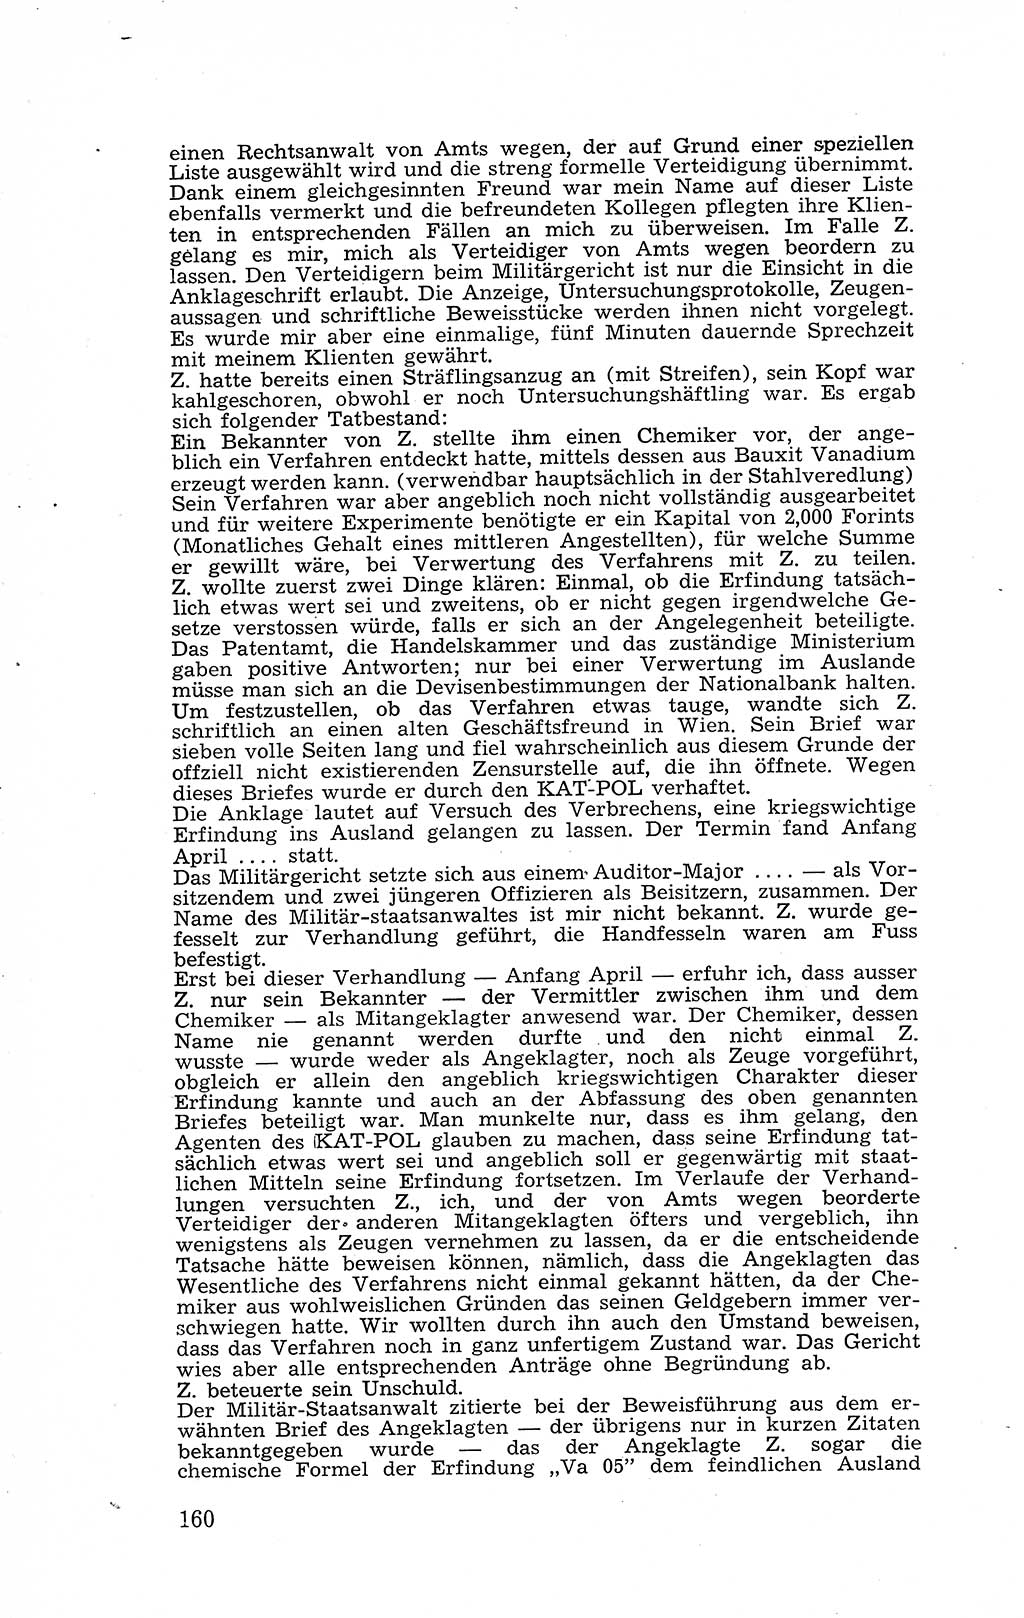 Recht in Fesseln, Dokumente, Internationale Juristen-Kommission [Bundesrepublik Deutschland (BRD)] 1955, Seite 160 (R. Dok. IJK BRD 1955, S. 160)